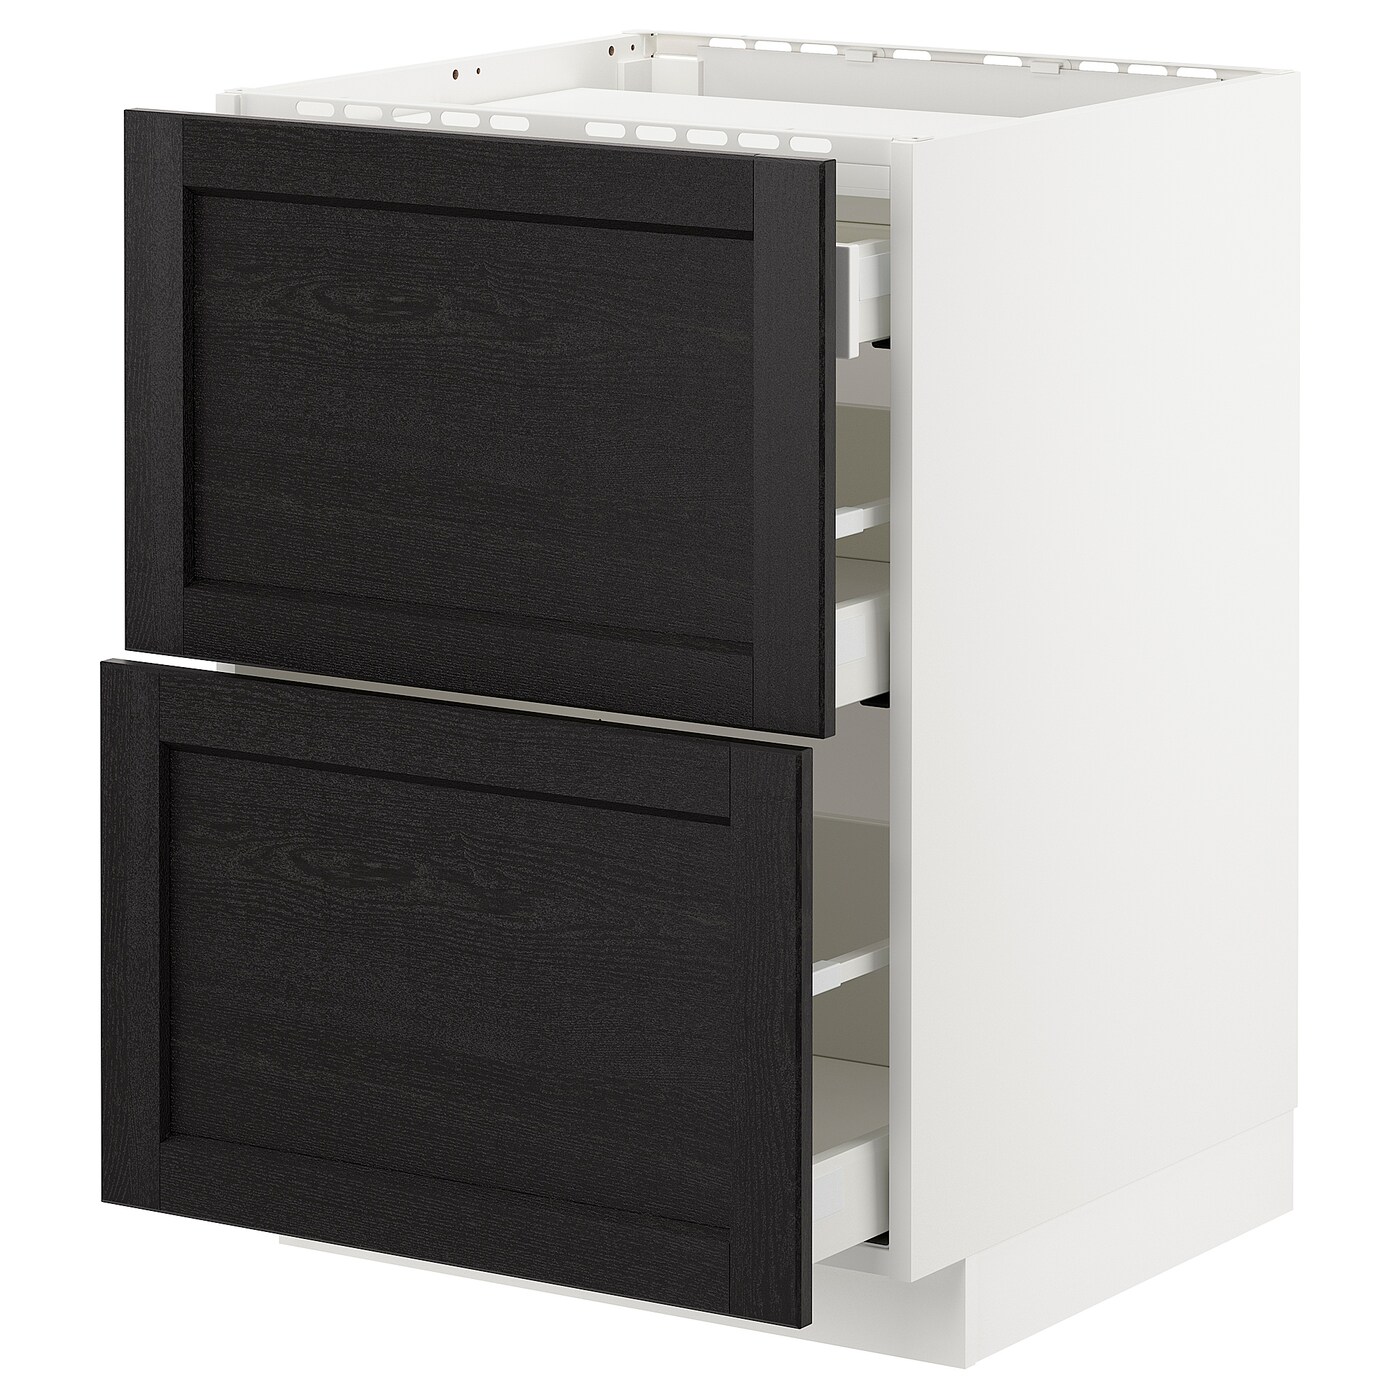 Напольный шкаф  - IKEA METOD MAXIMERA, 88x61,8x60см, белый/черный, МЕТОД МАКСИМЕРА ИКЕА